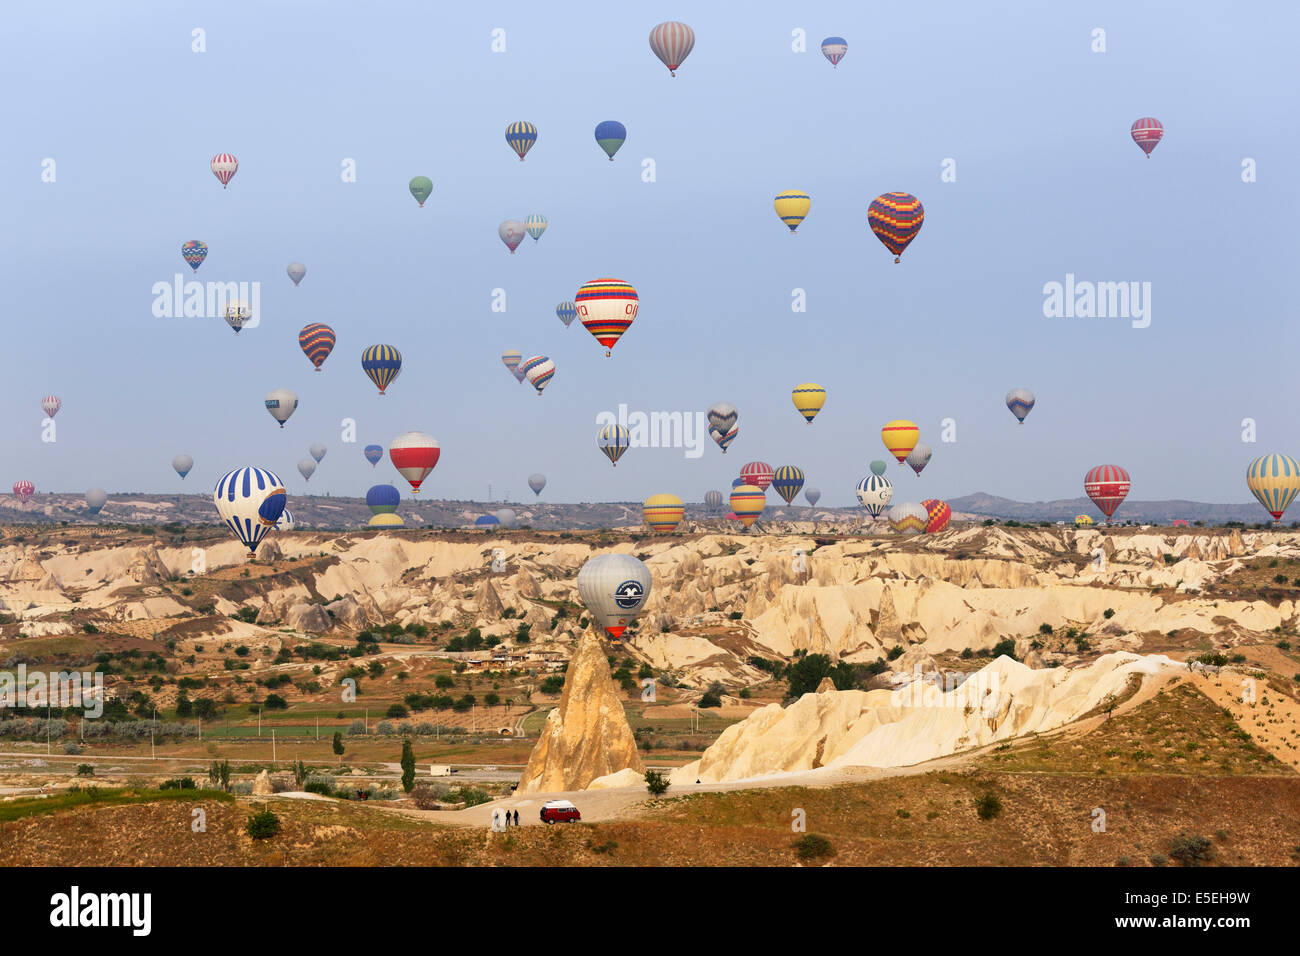 Hot air balloons, Göreme National Park, Cappadocia, Central Anatolia Region, Anatolia, Turkey Stock Photo